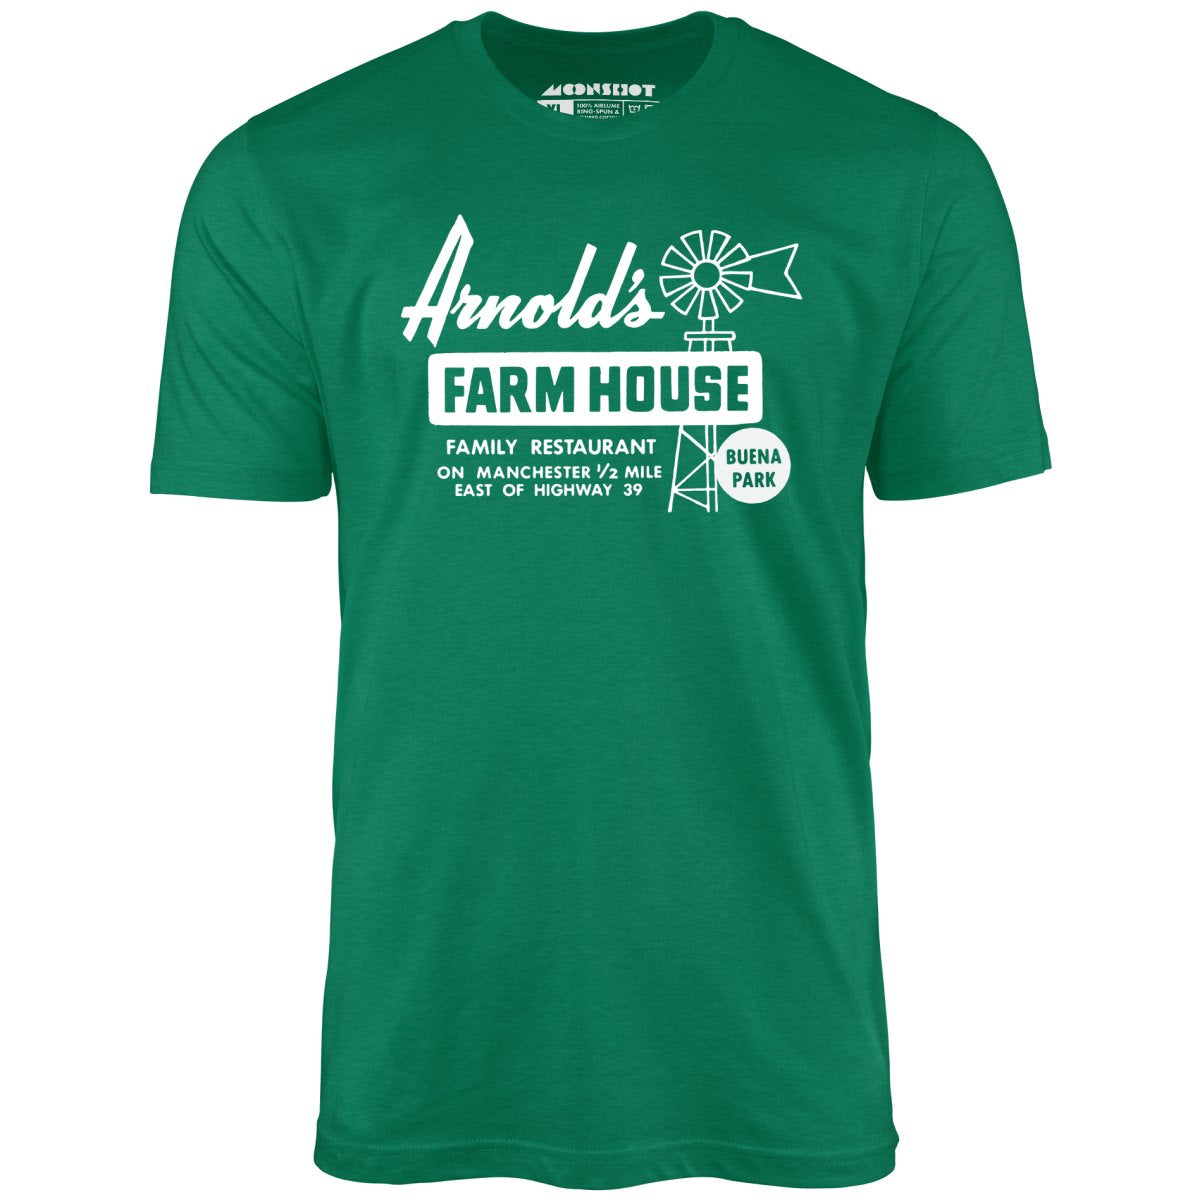 Arnold's Farmhouse - Buena Park, CA - Vintage Restaurant - Unisex T-Shirt